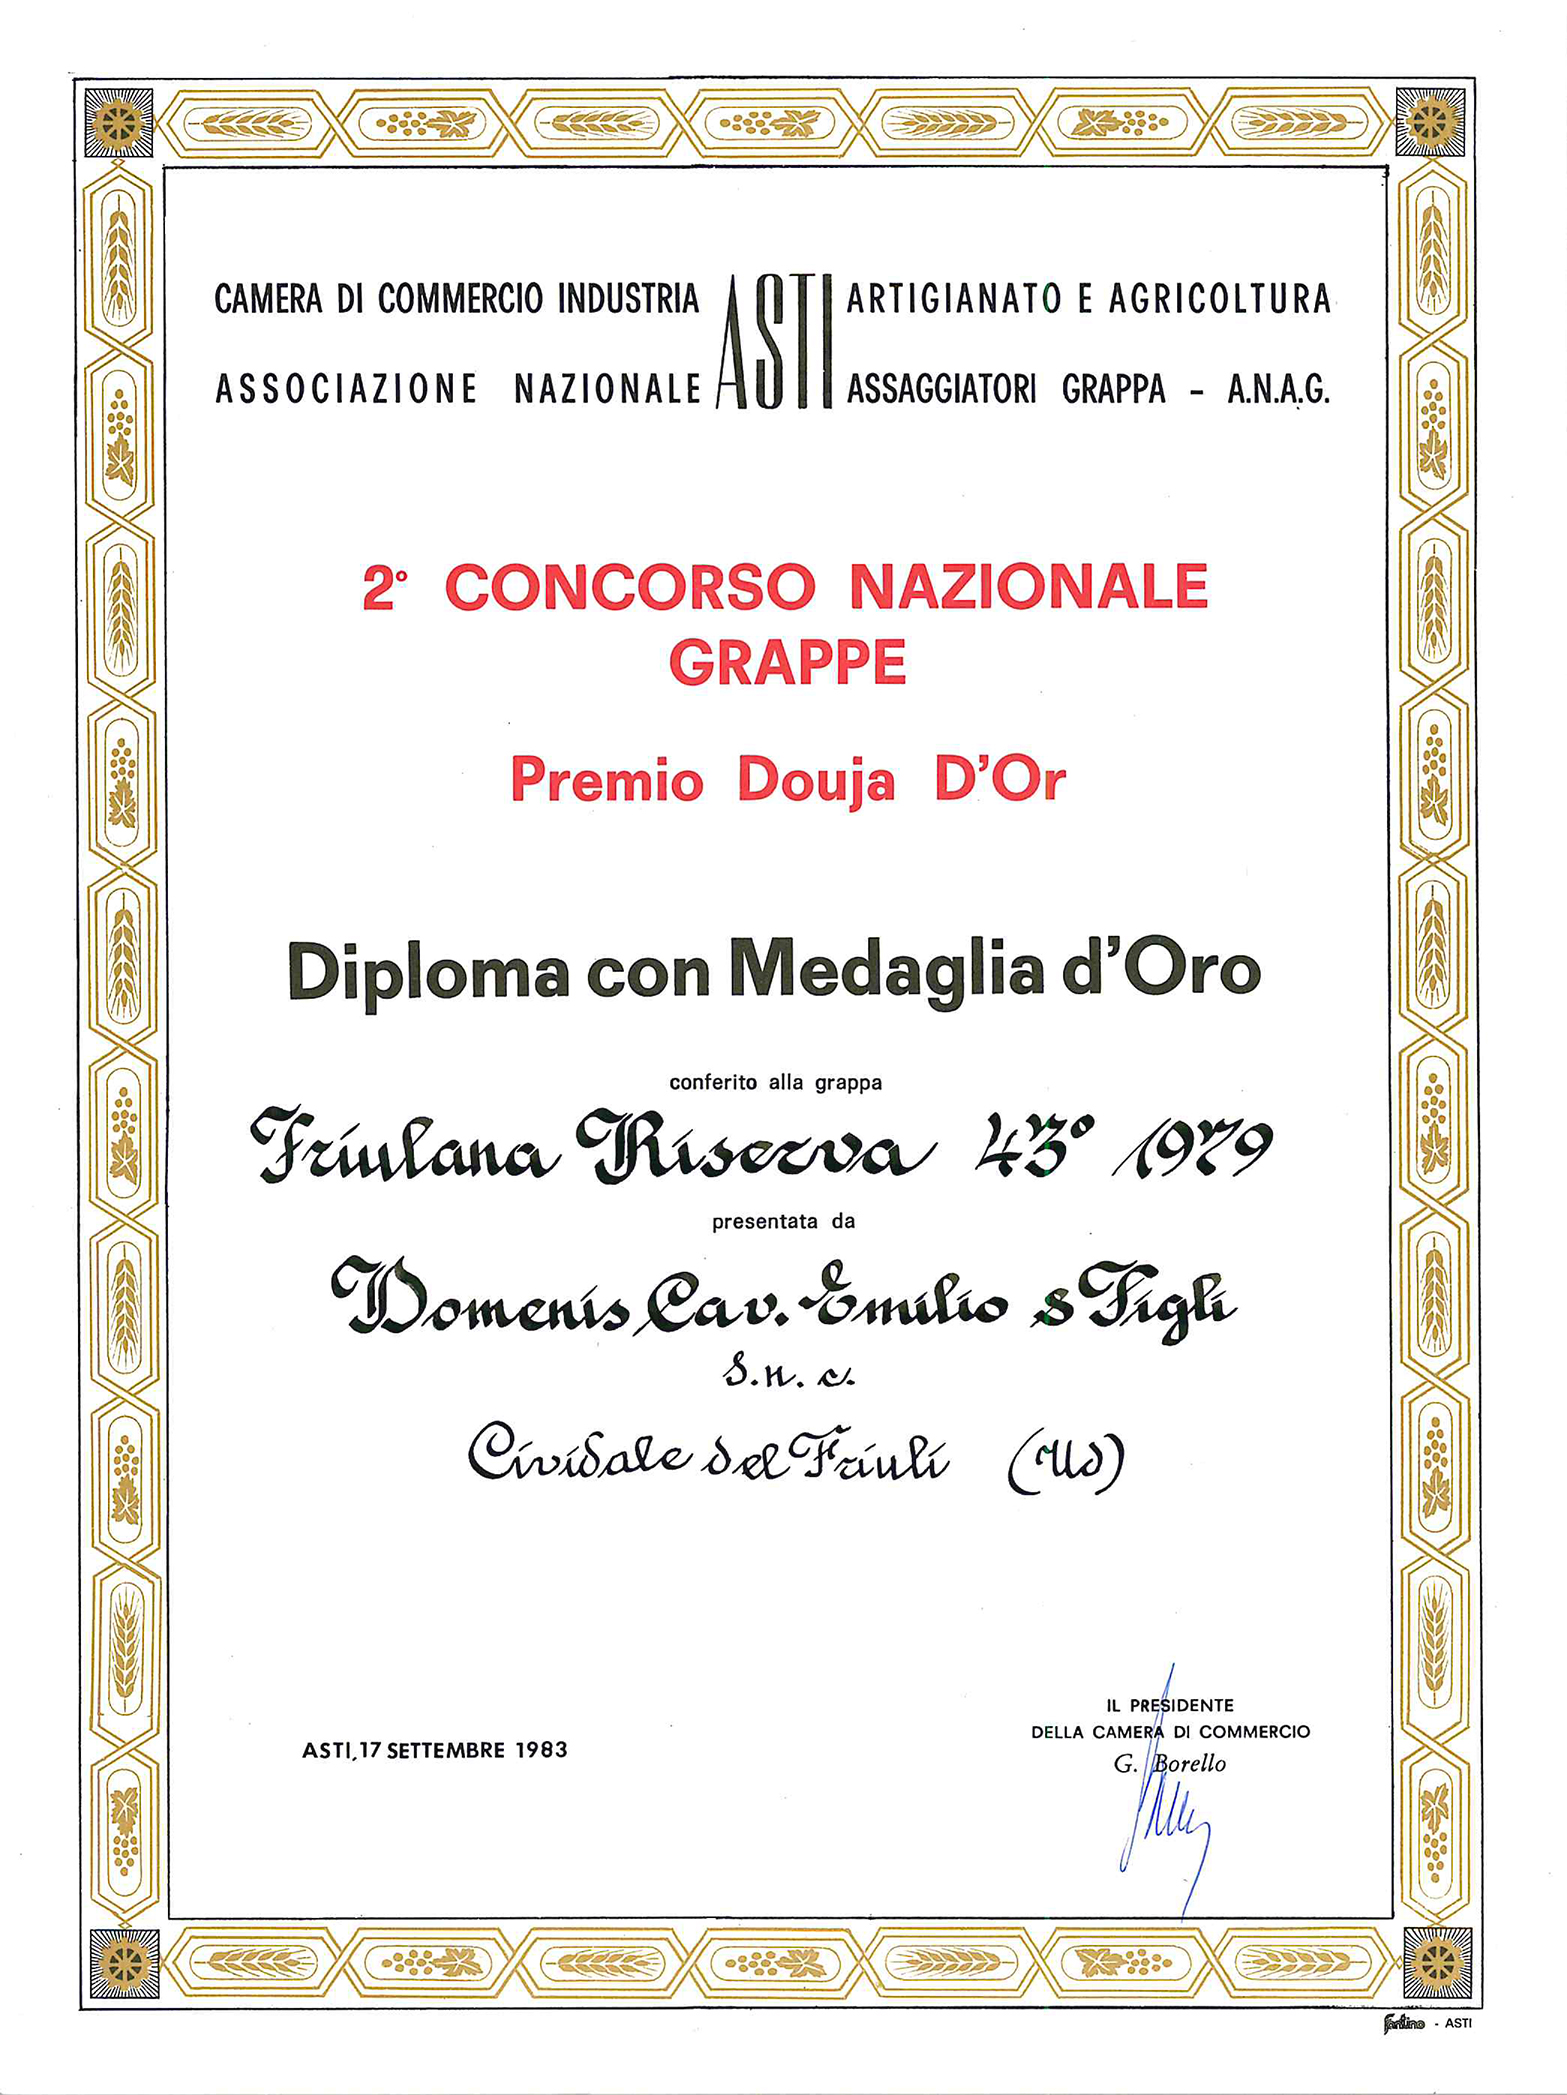 Premio Douja d’Or 1983 – Grappa Friulana Riserva 43° 1979